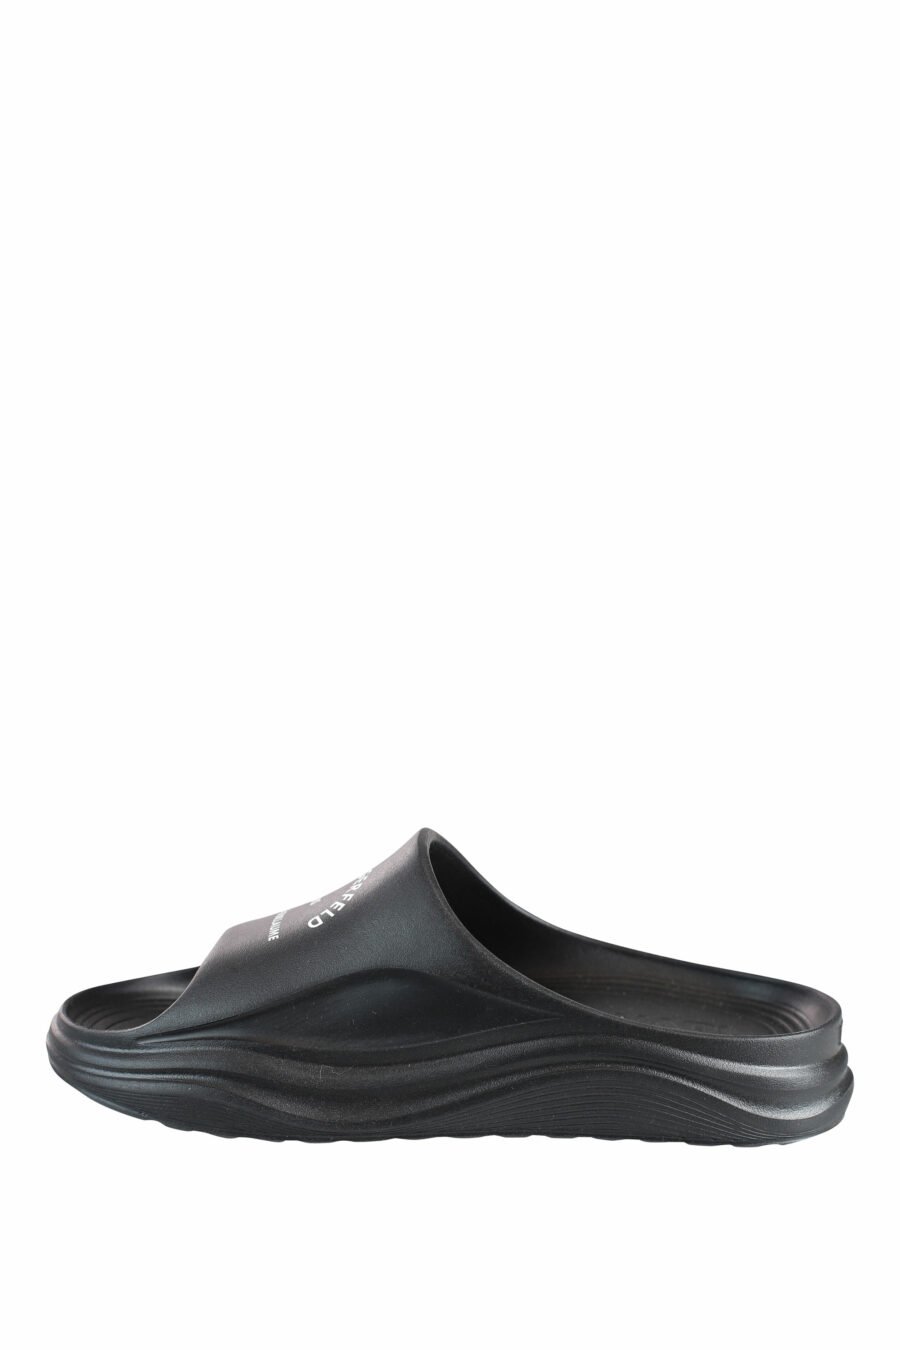 Schwarze Öko-Flip-Flops mit weißem "rue st guillaume"-Logo - IMG 0053